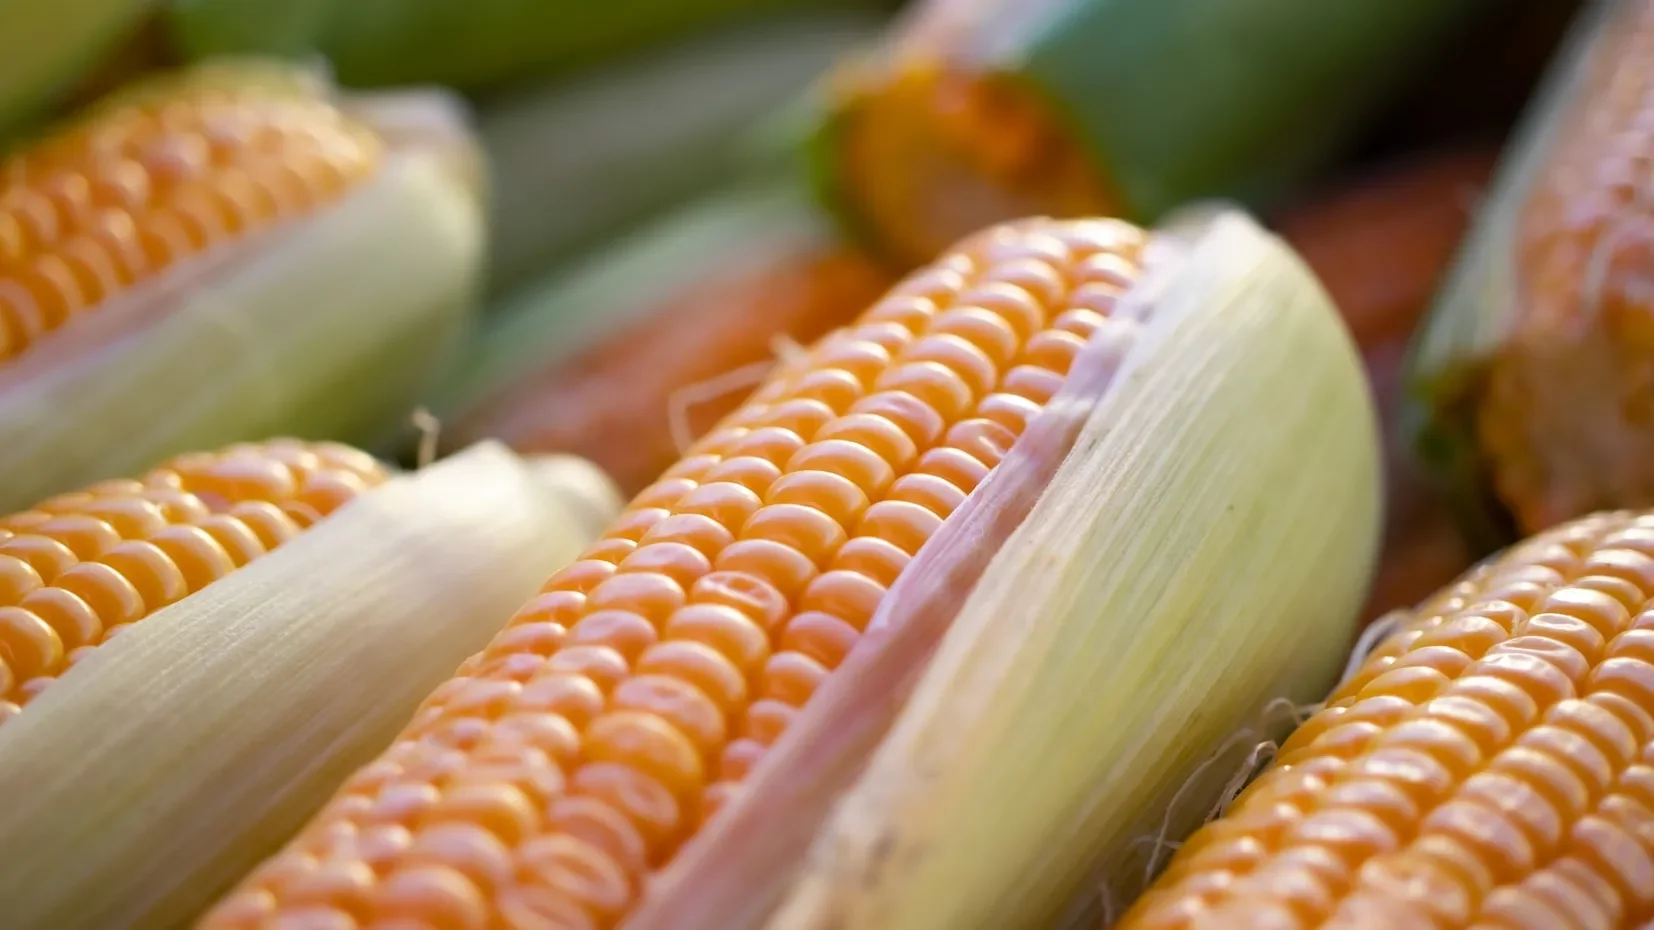 Avicultores piden oficializar que el maíz transgénico está permitido en el sector pecuario